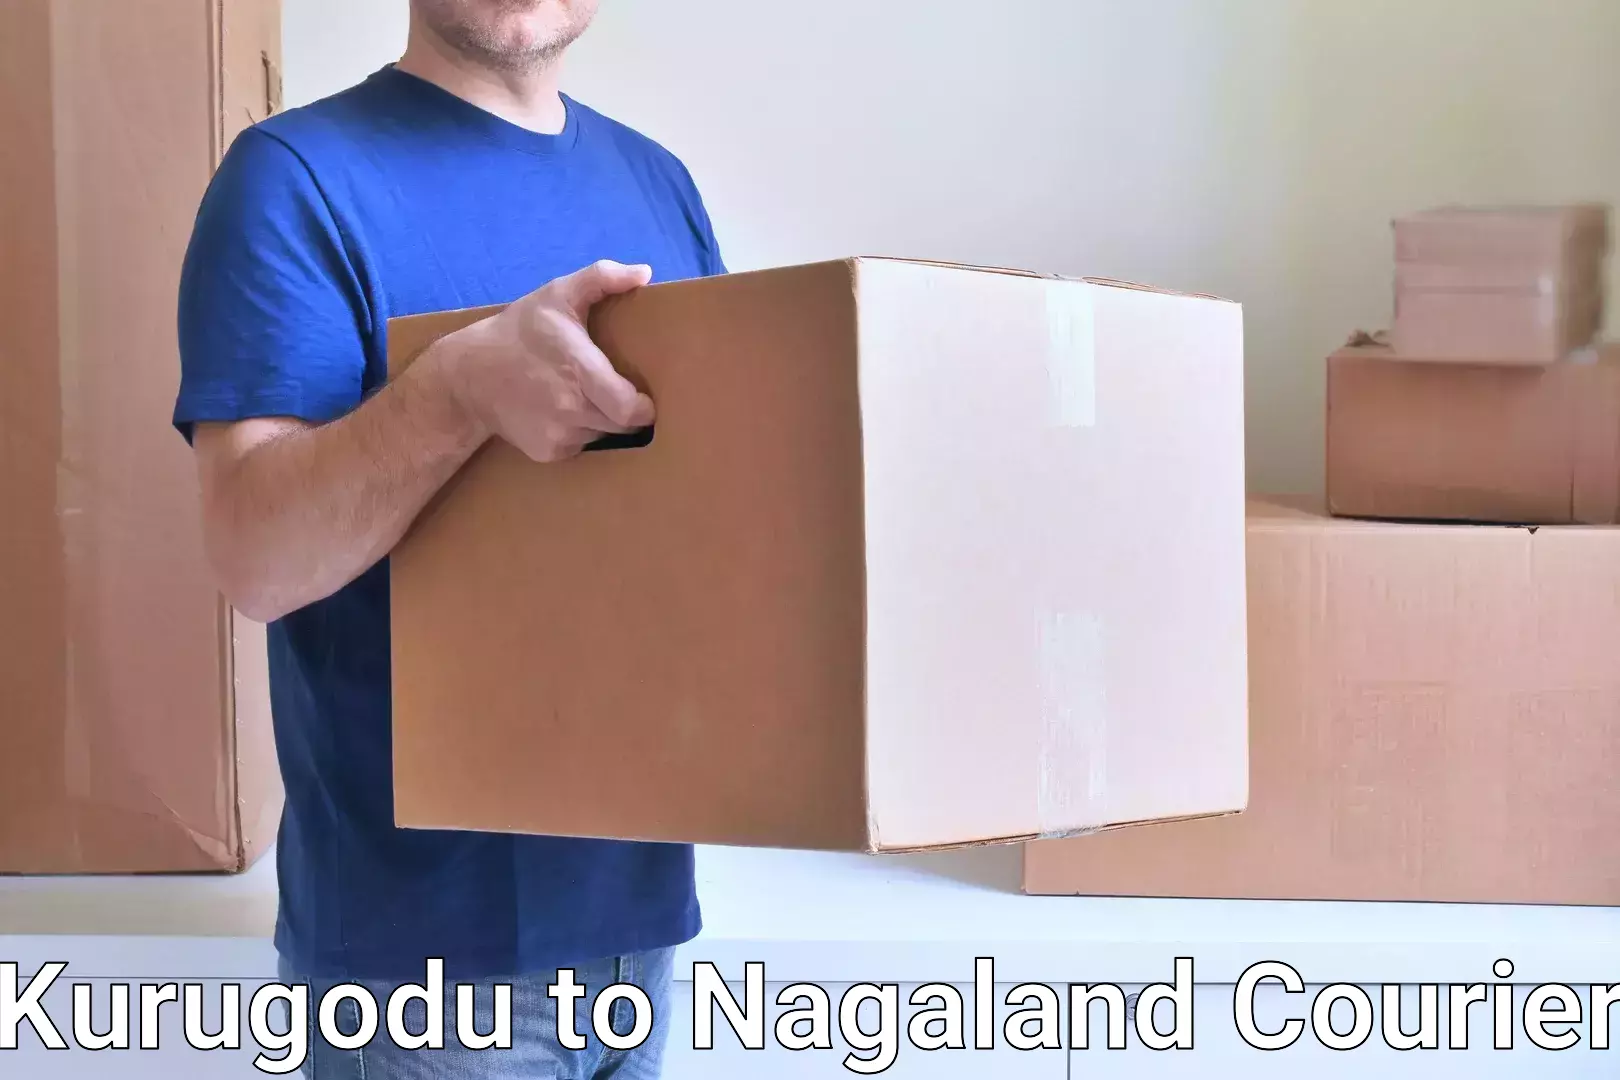 Global shipping solutions Kurugodu to NIT Nagaland